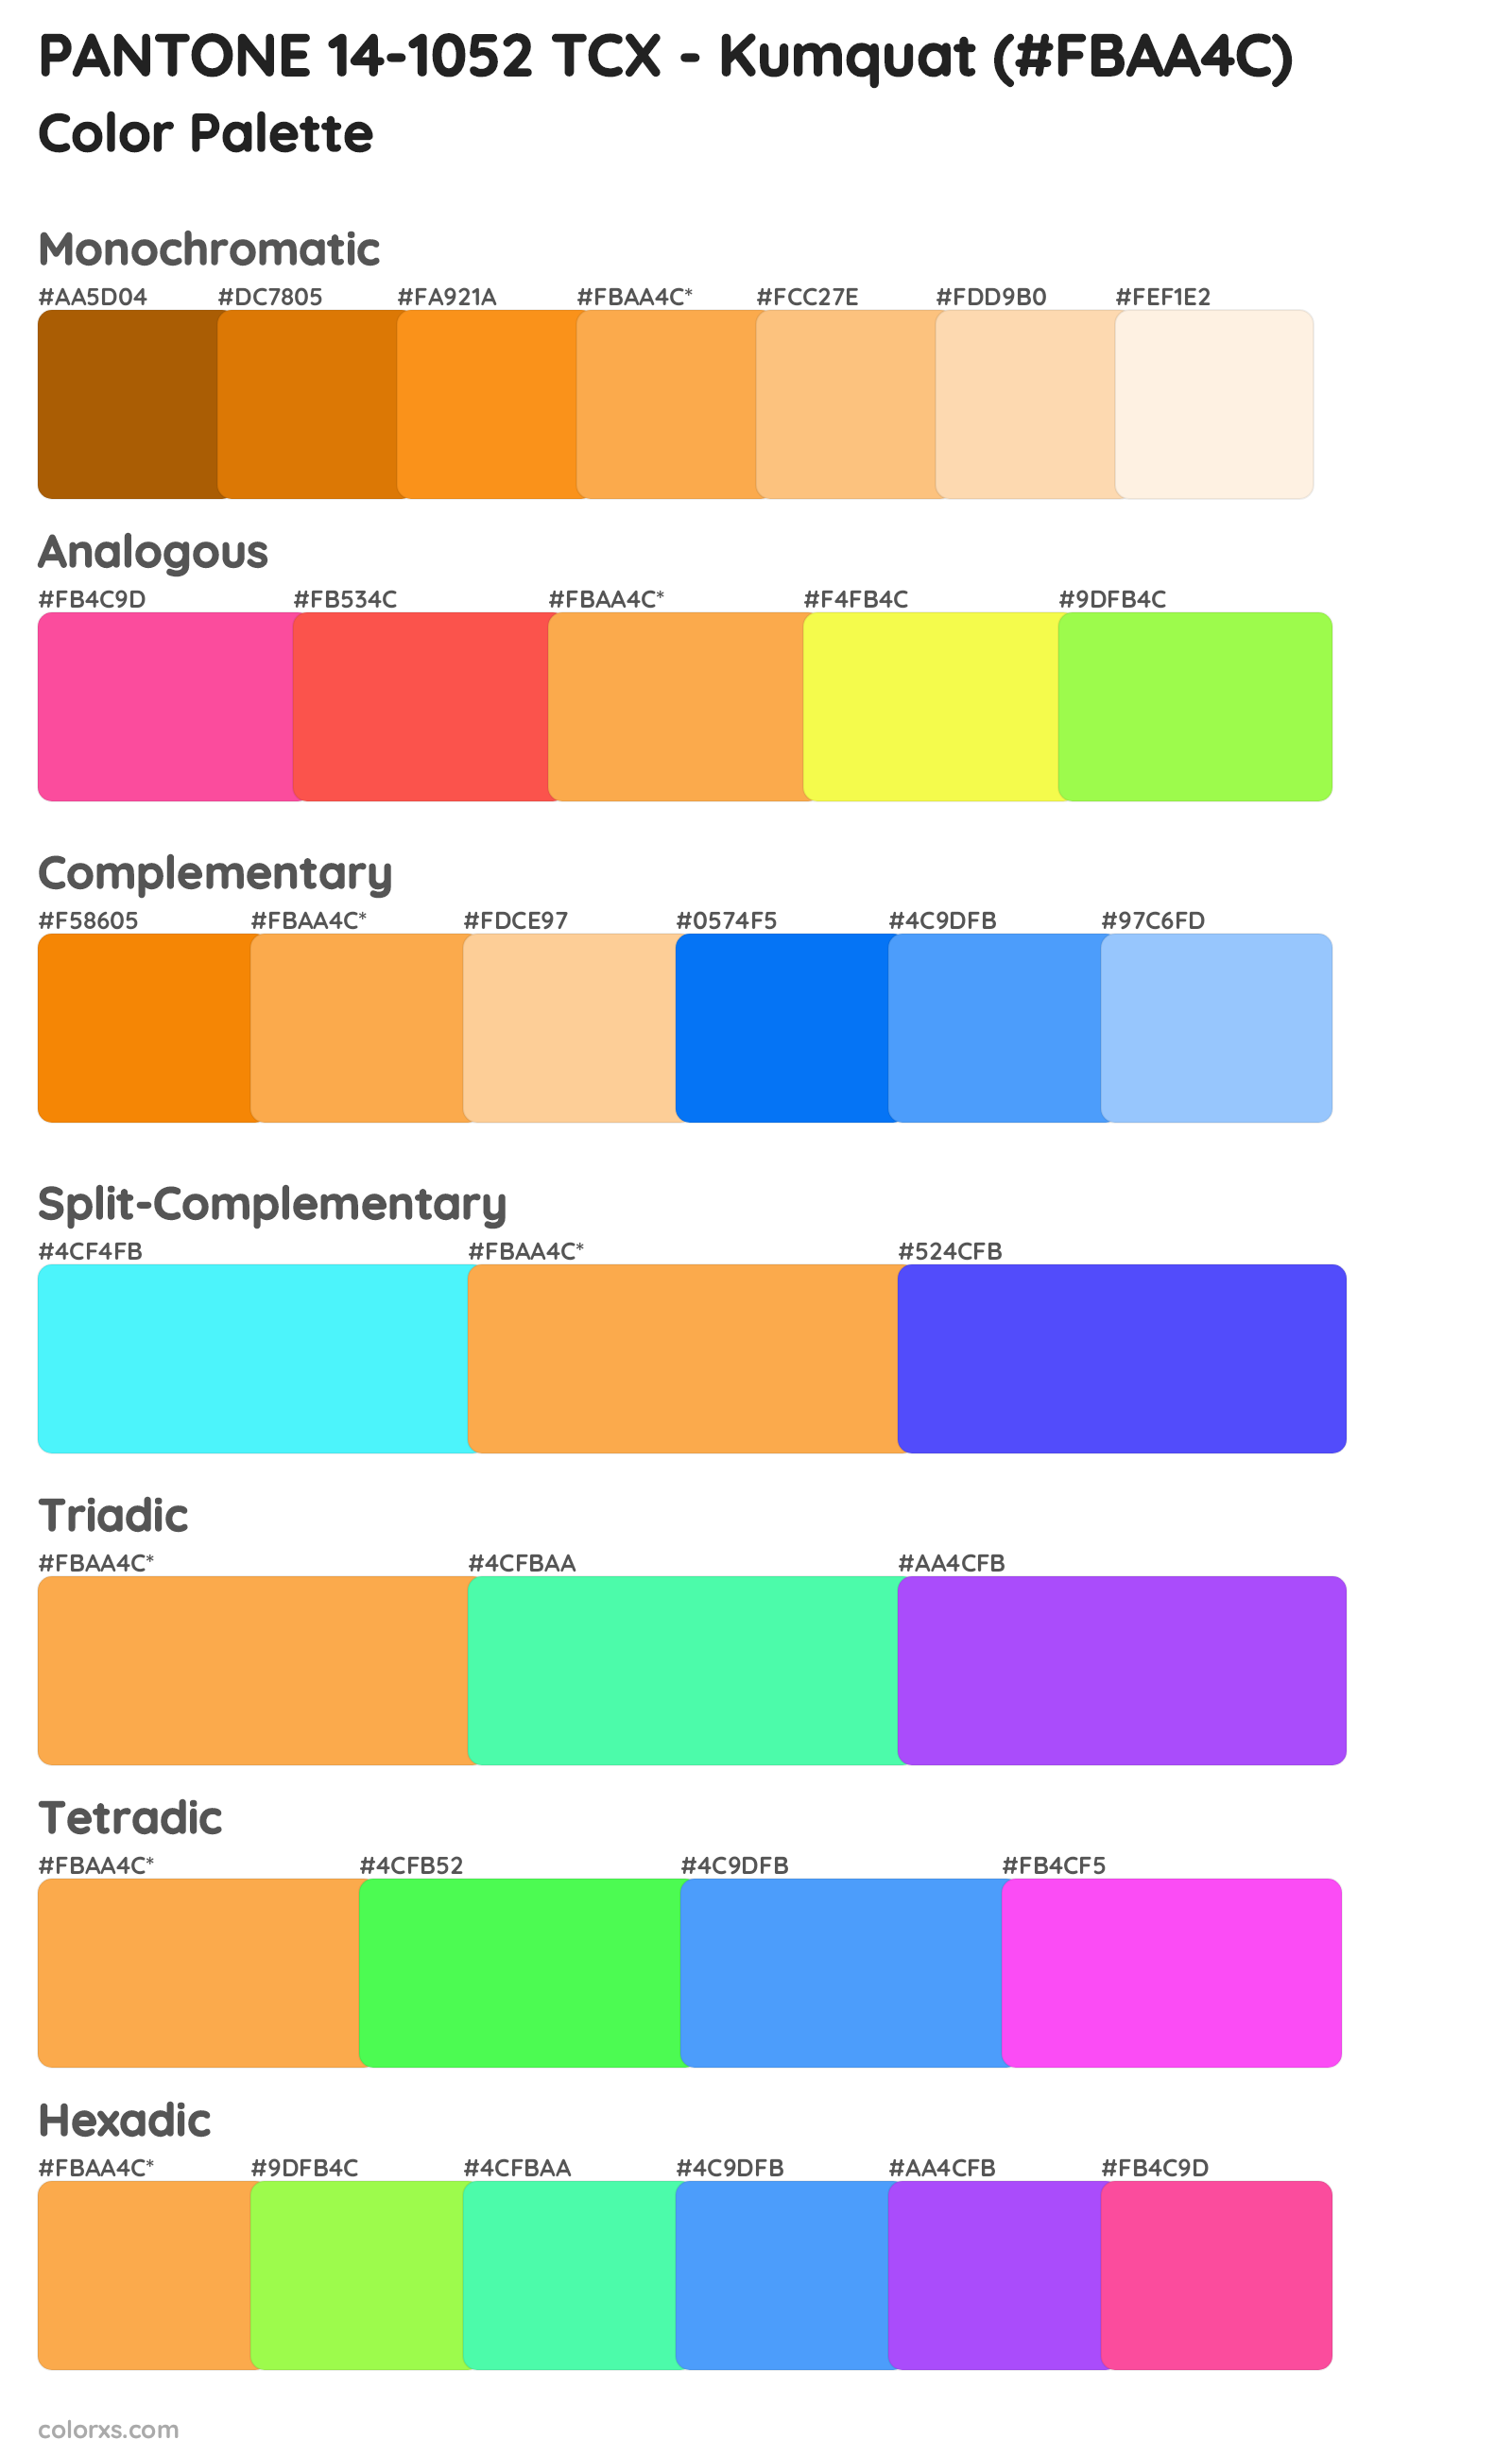 PANTONE 14-1052 TCX - Kumquat Color Scheme Palettes